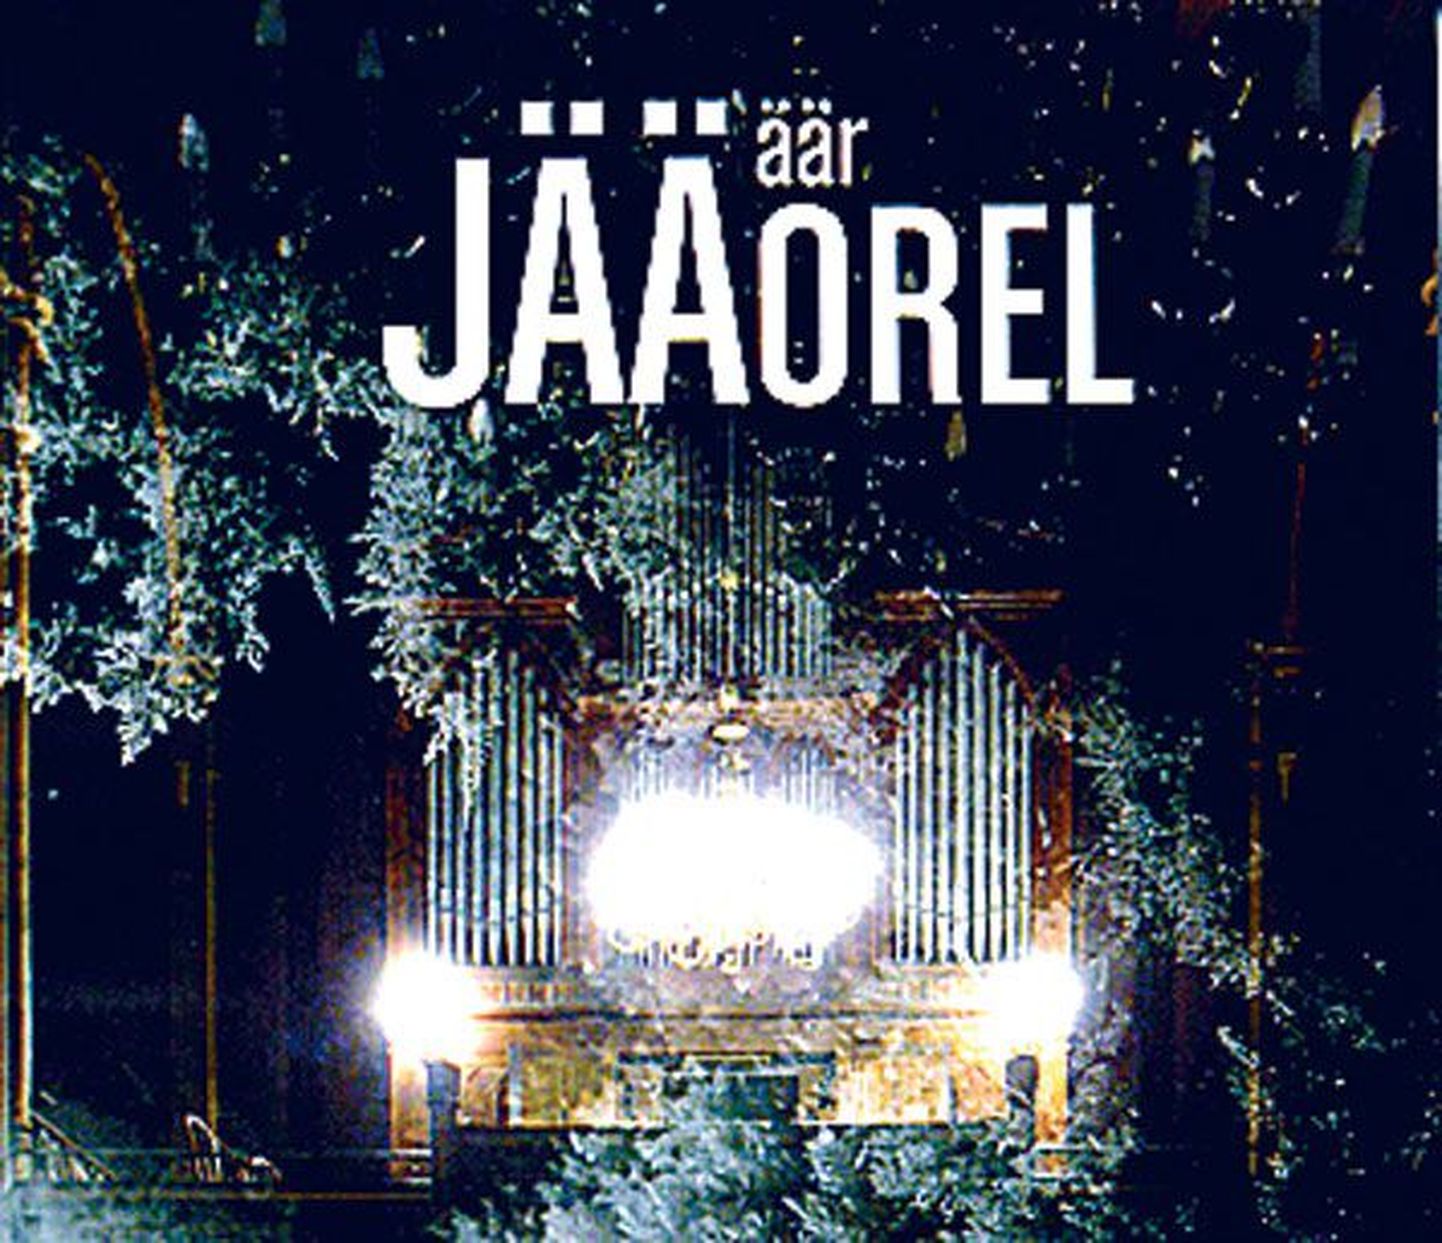 Kontsert ja plaat
• Ansambel Jäääär annab Tartu Jaani kirikus 30. detsembril kl 19 kontserdi «Jääorel», mis kestab umbes tund ja 15 minutit.
• Samanimelise CD (pildil) salvestas Jäääär tänavu märtsis Tallinnas Rootsi-Mihkli kirikus.